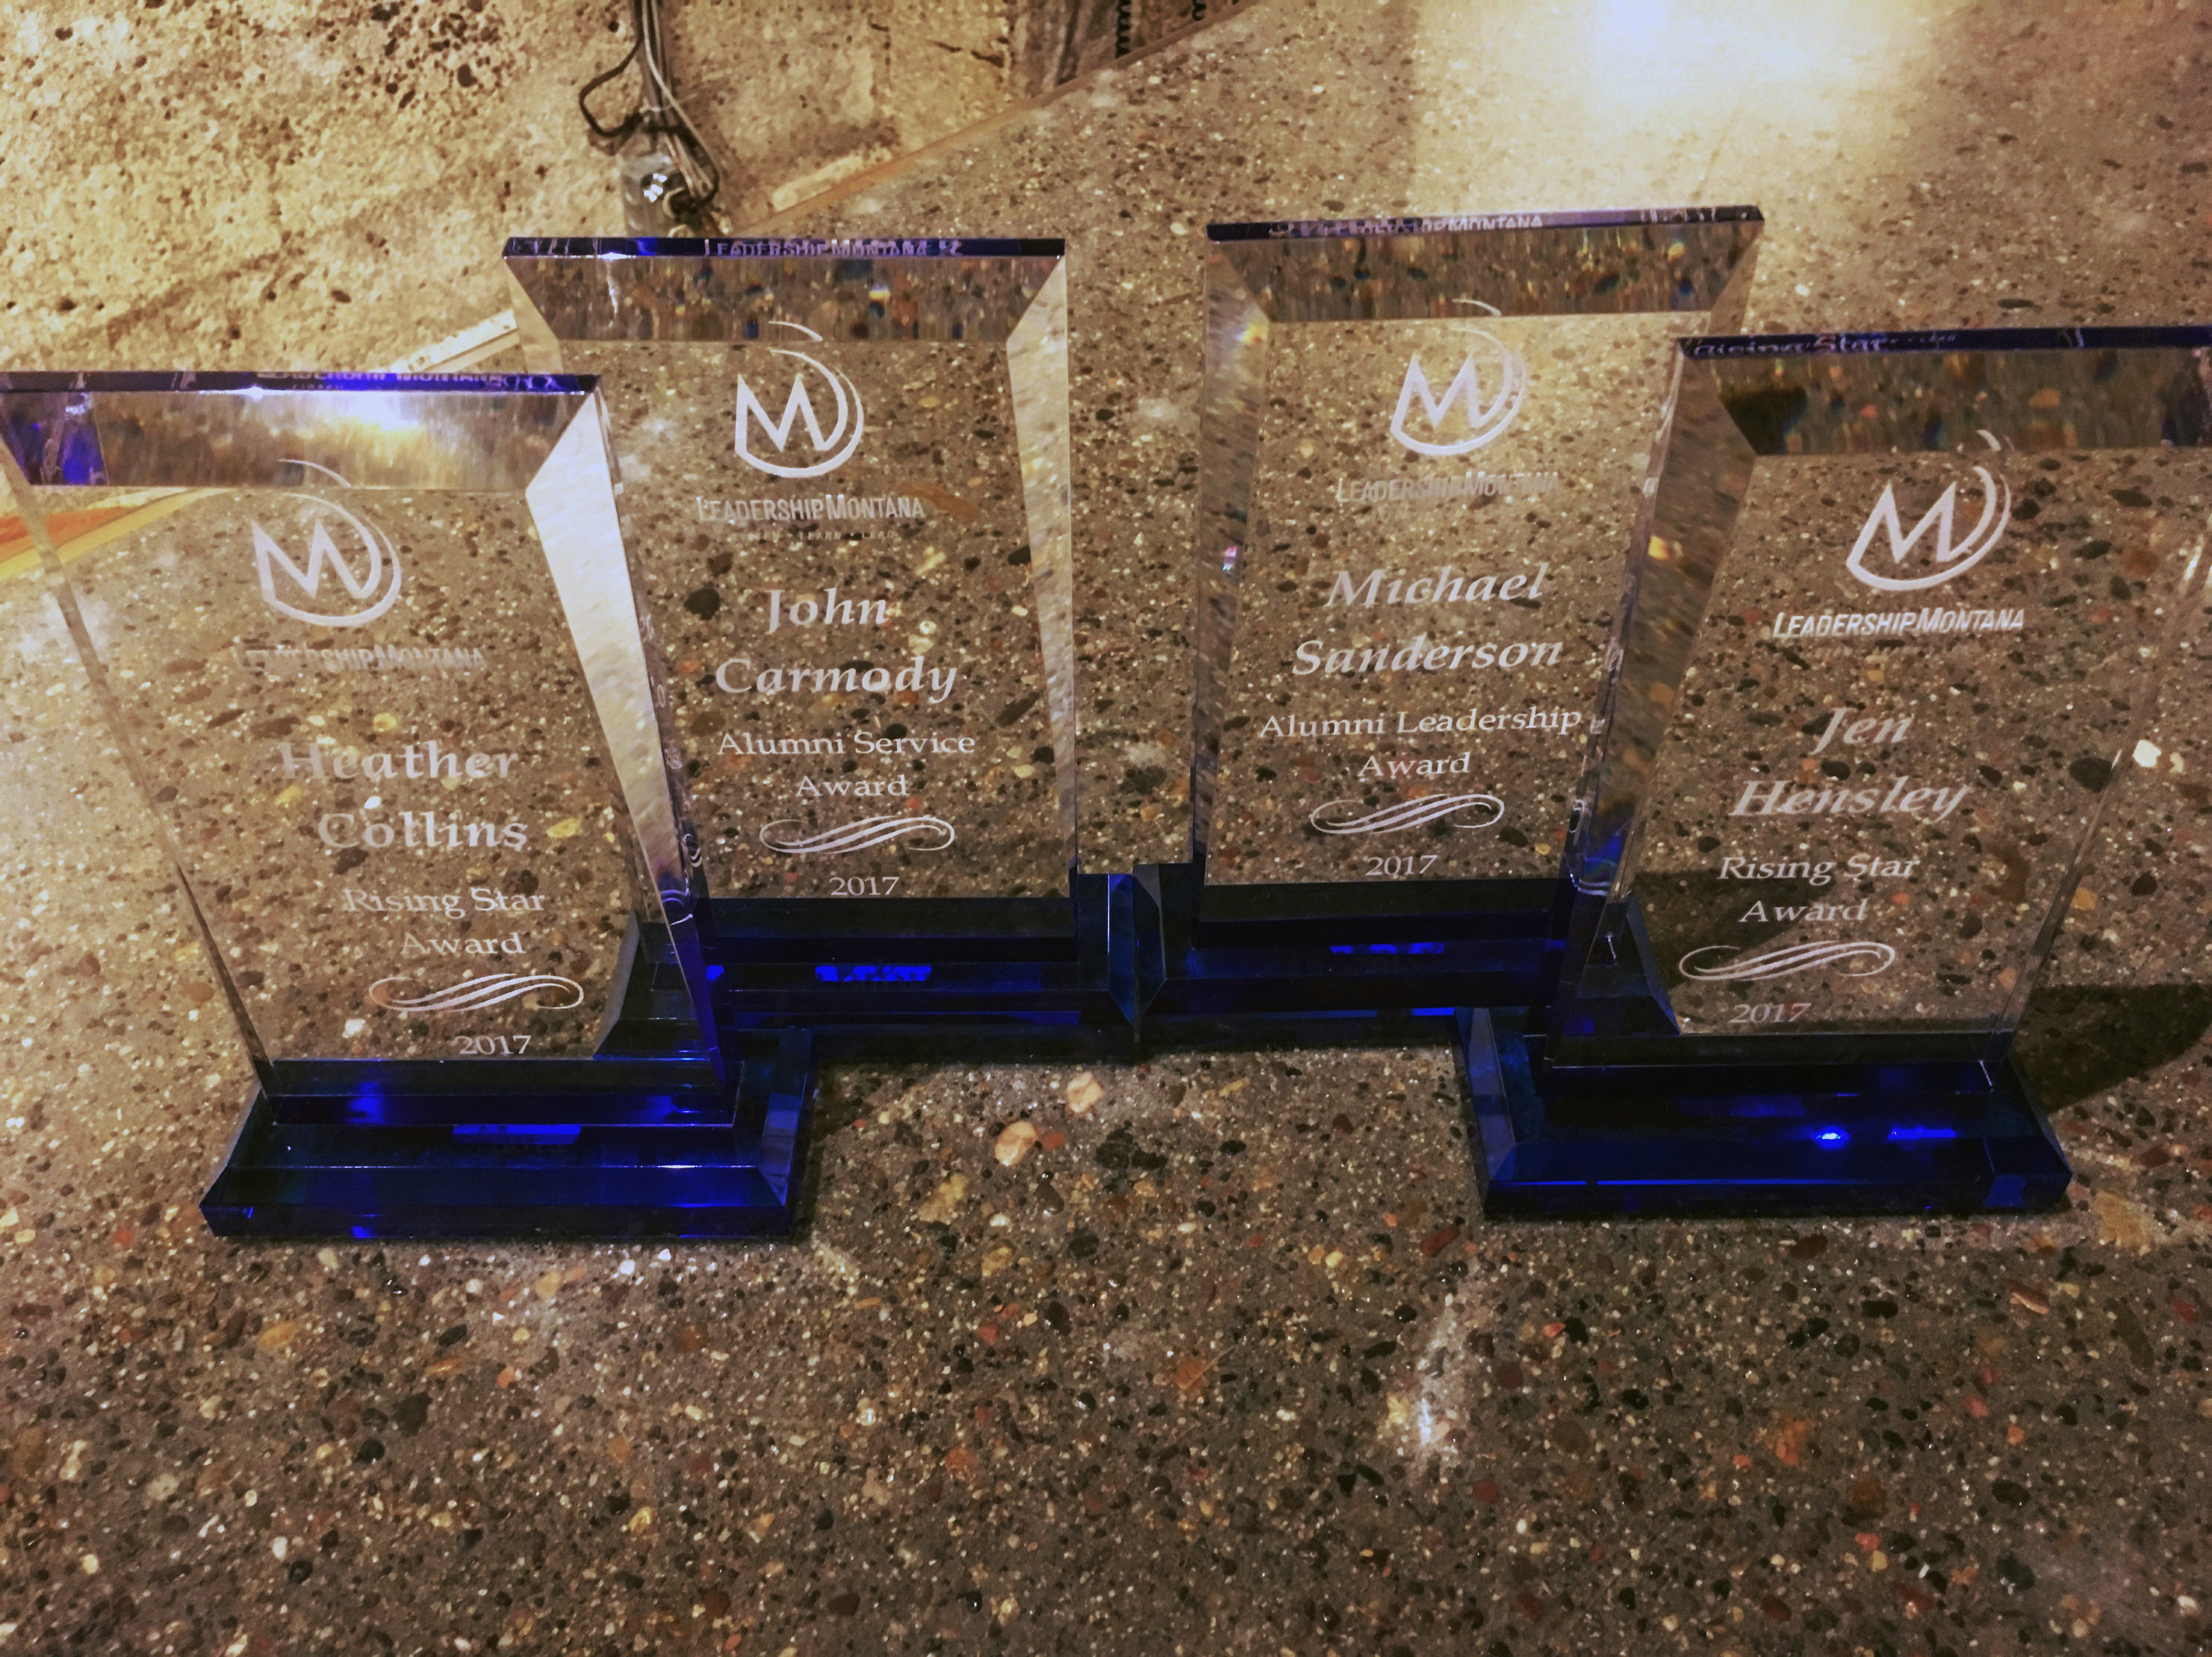 Alumni Award plaques